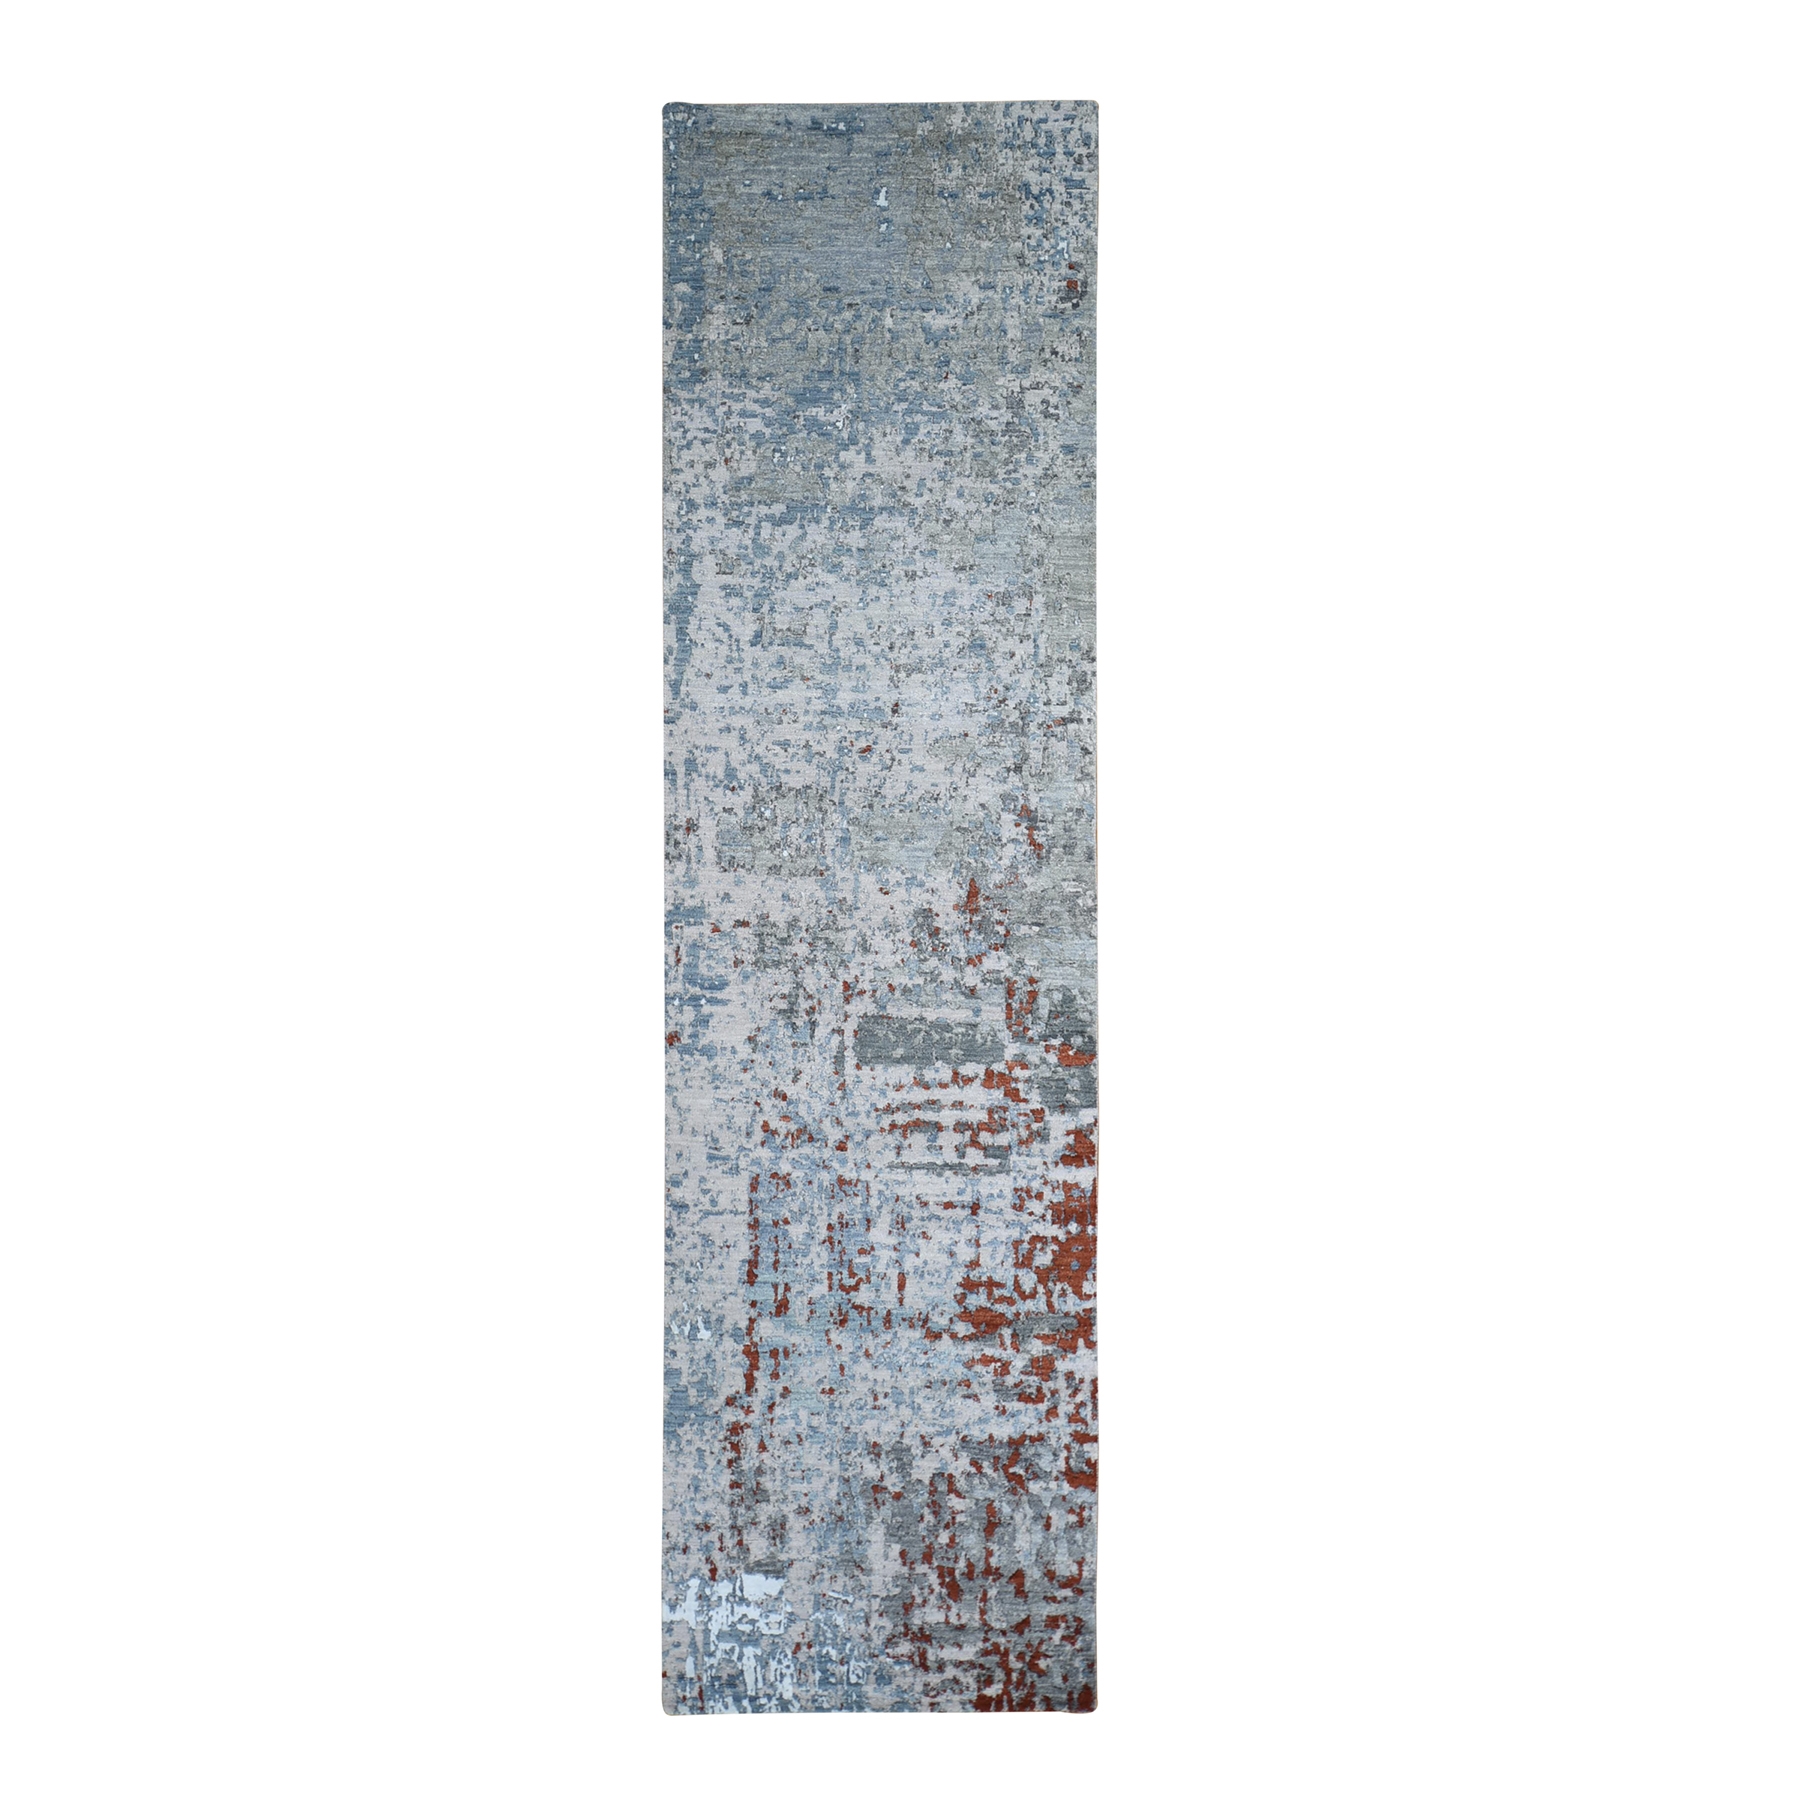 2'6"x10'2" Light Blue Abstract Design Wool and Silk Denser Weave Hand Woven Runner Oriental Rug 